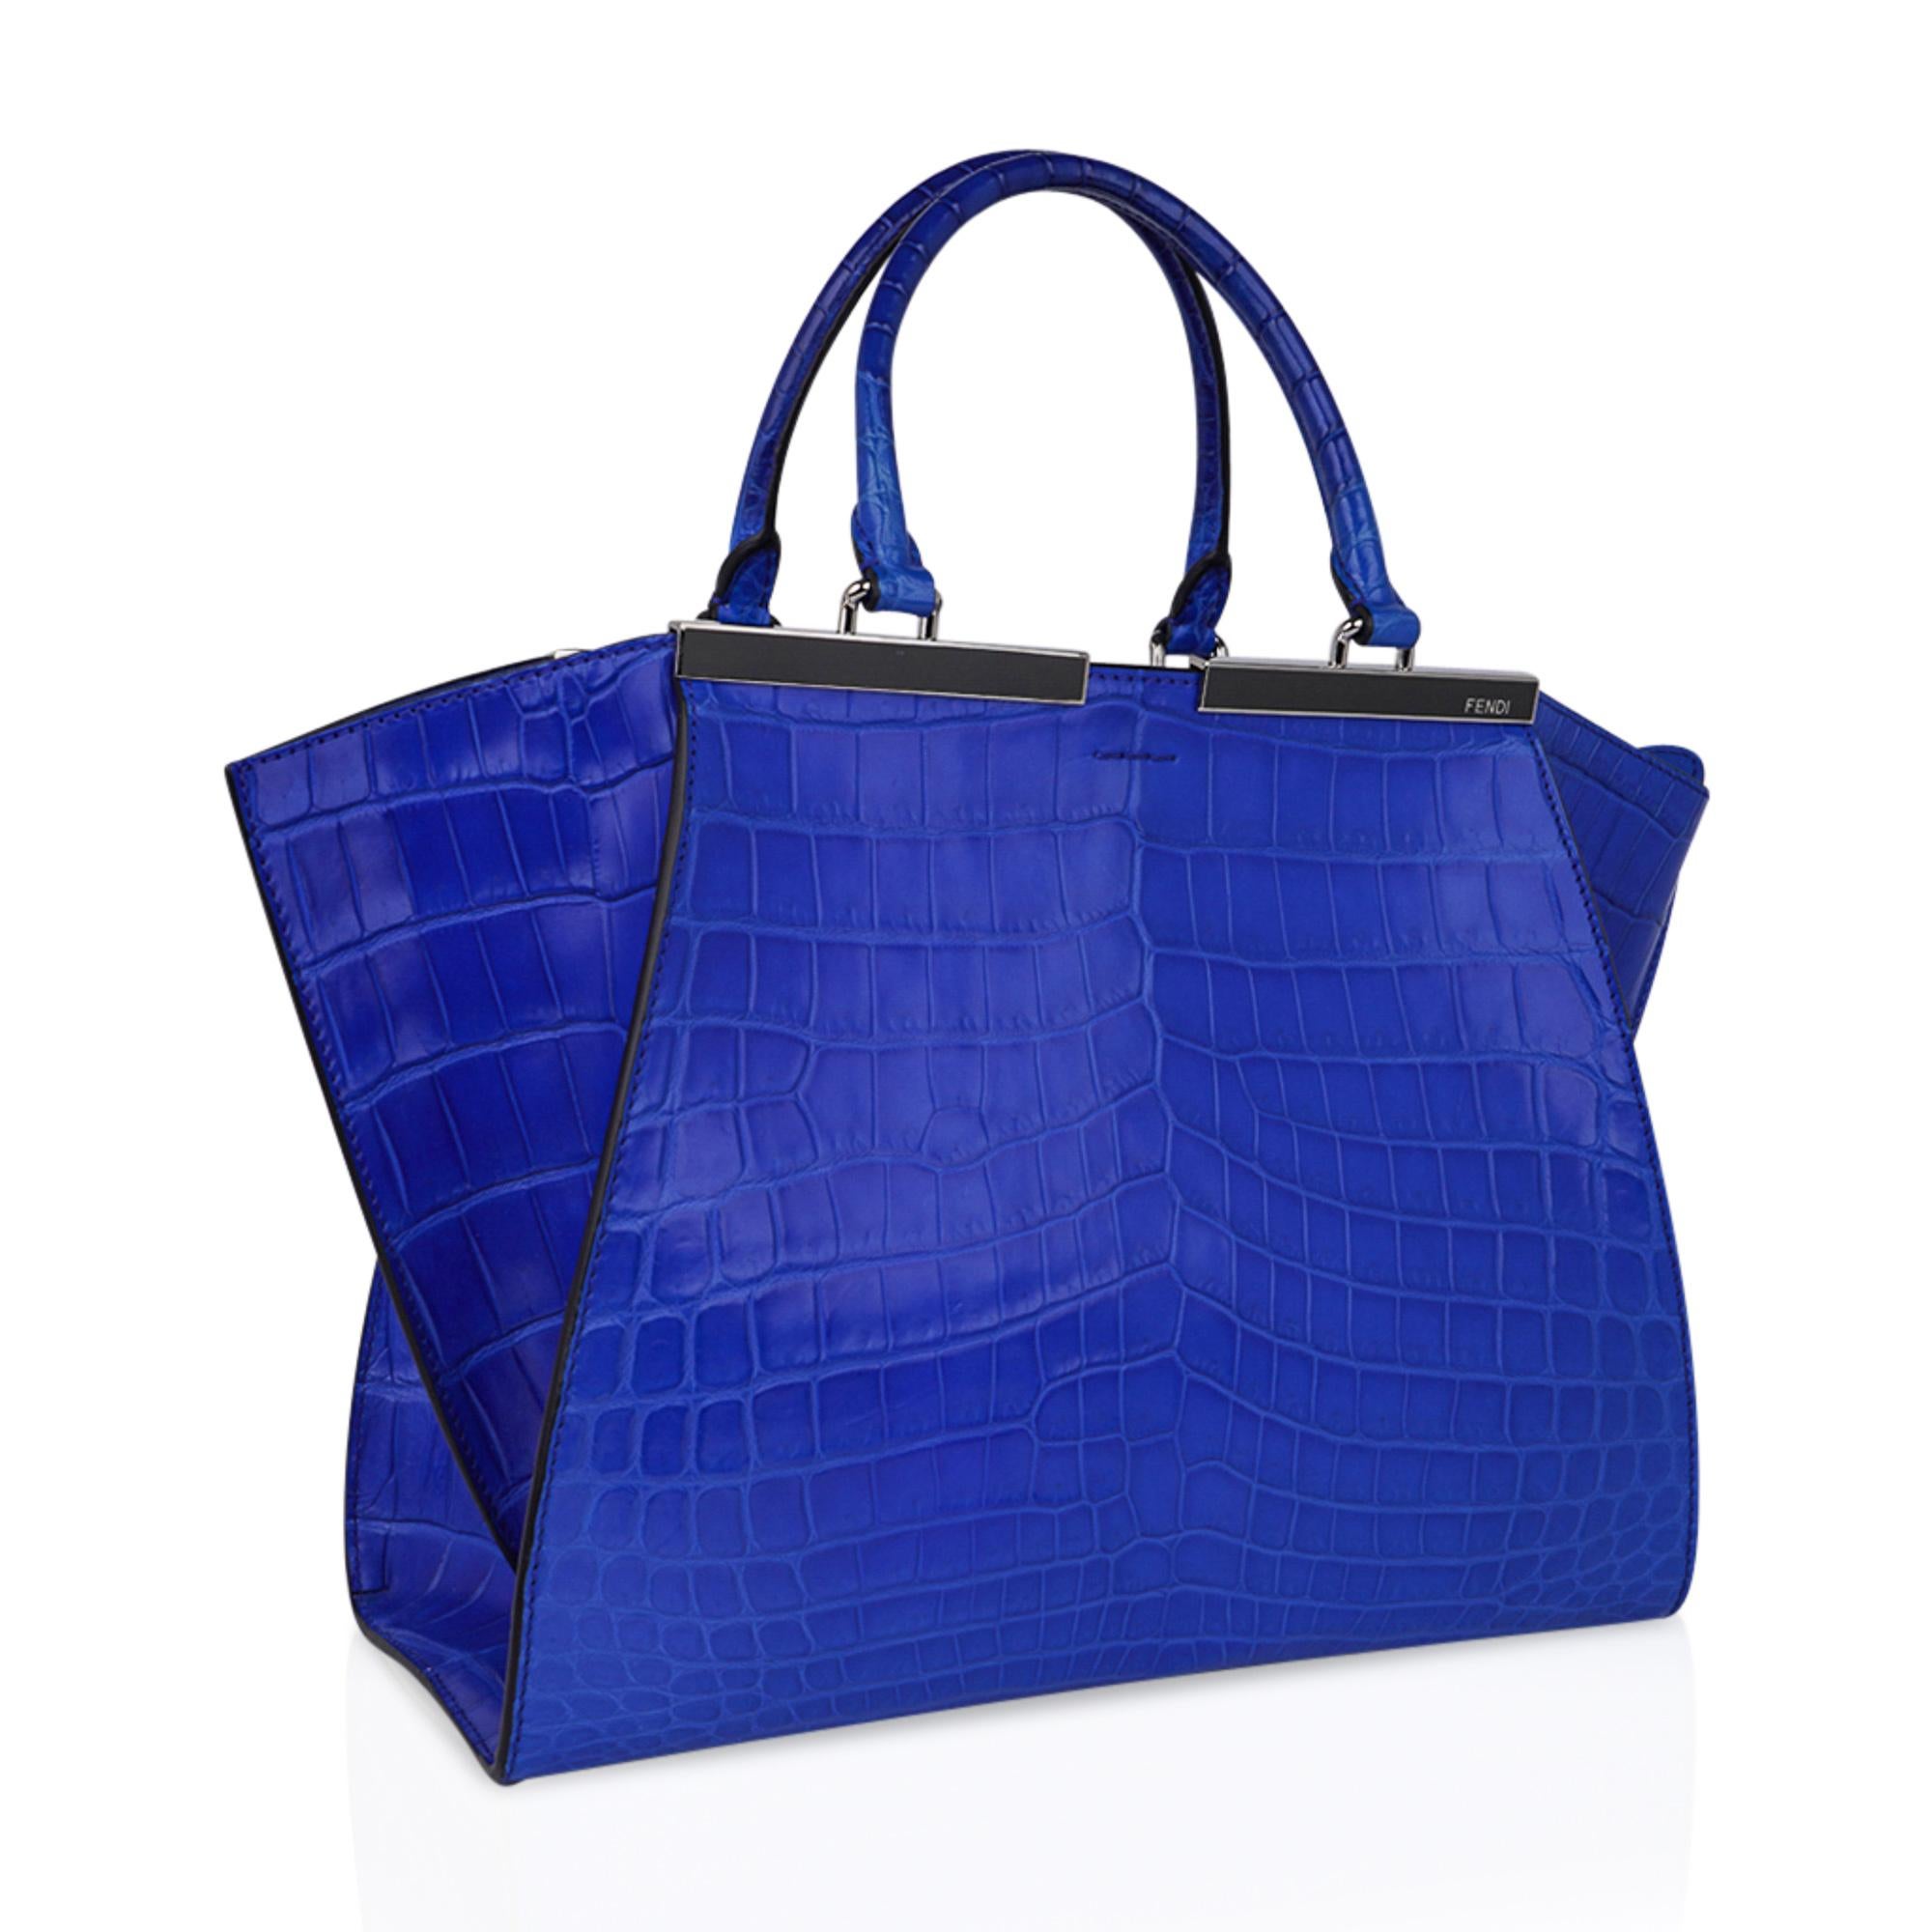 Mightychic propose un sac Fendi 3Jours Medium Blue Matte Crocodile.
Un fourre-tout en crocodile bleu électrique mat, riche et saisissant, avec une quincaillerie de couleur argentée.
Double poignée avec fermeture à glissière supérieure.
Le sac est